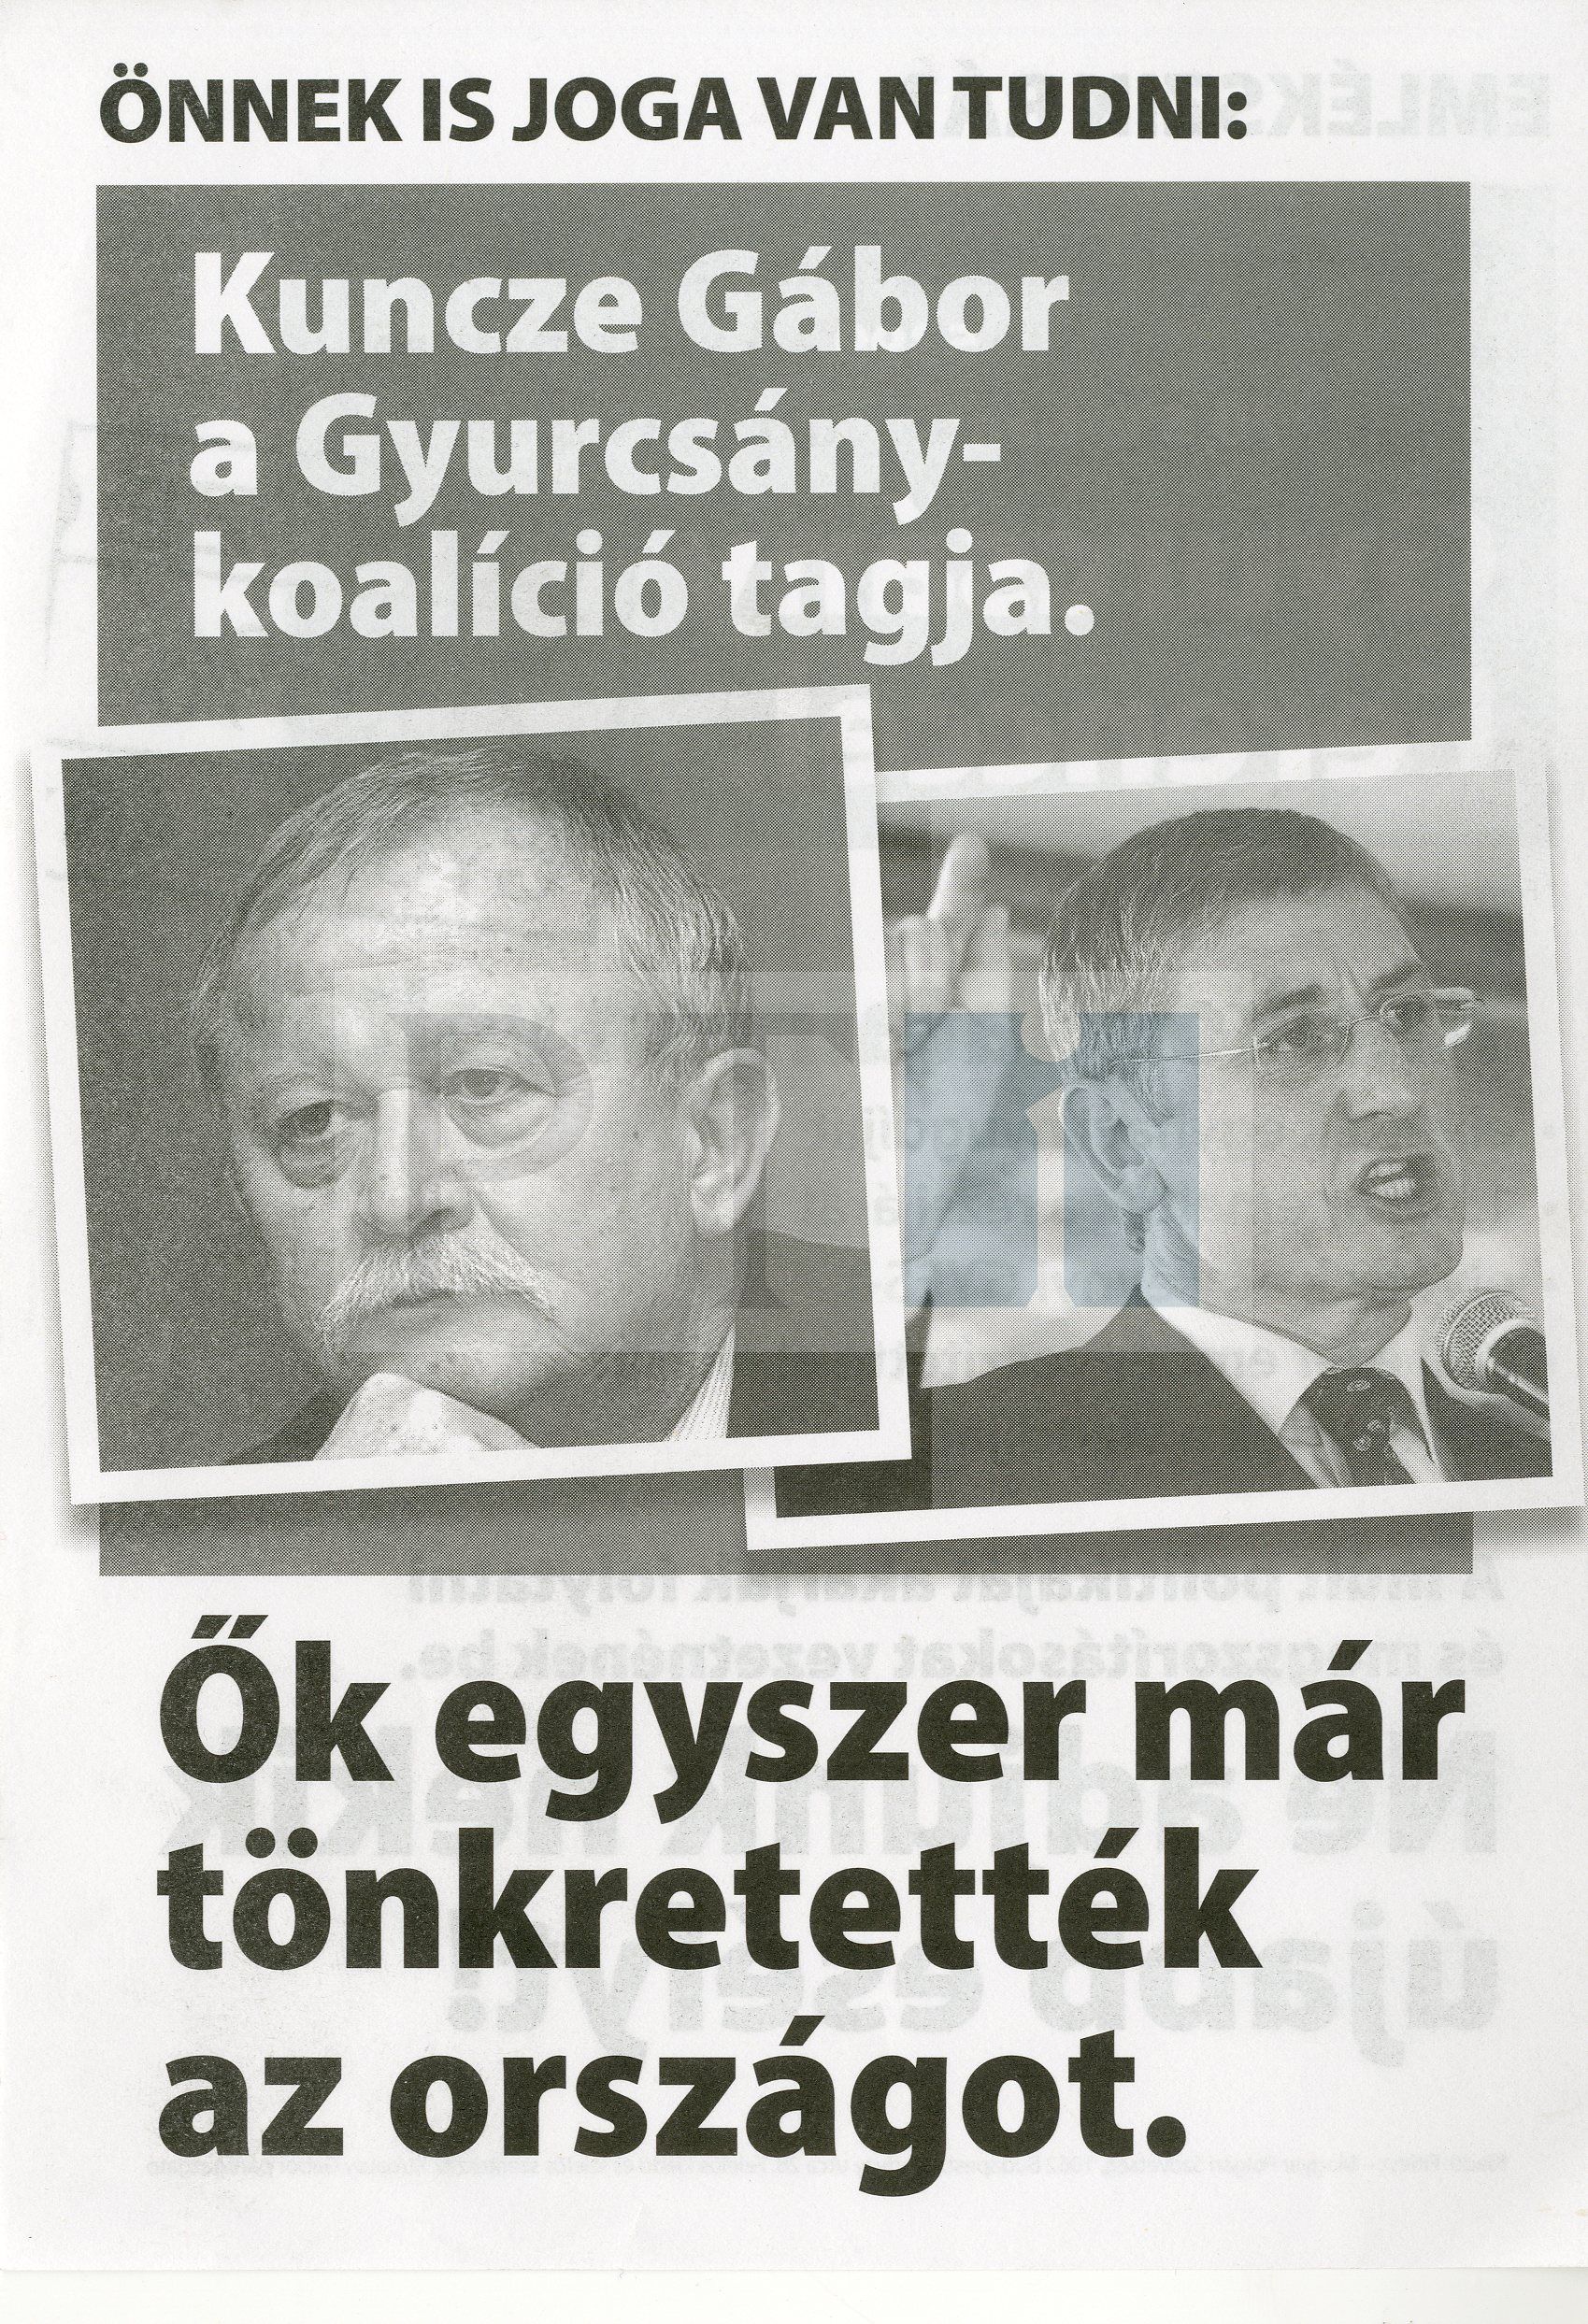 fidesz_anti-kuncze_gyurcsany_2014.jpg